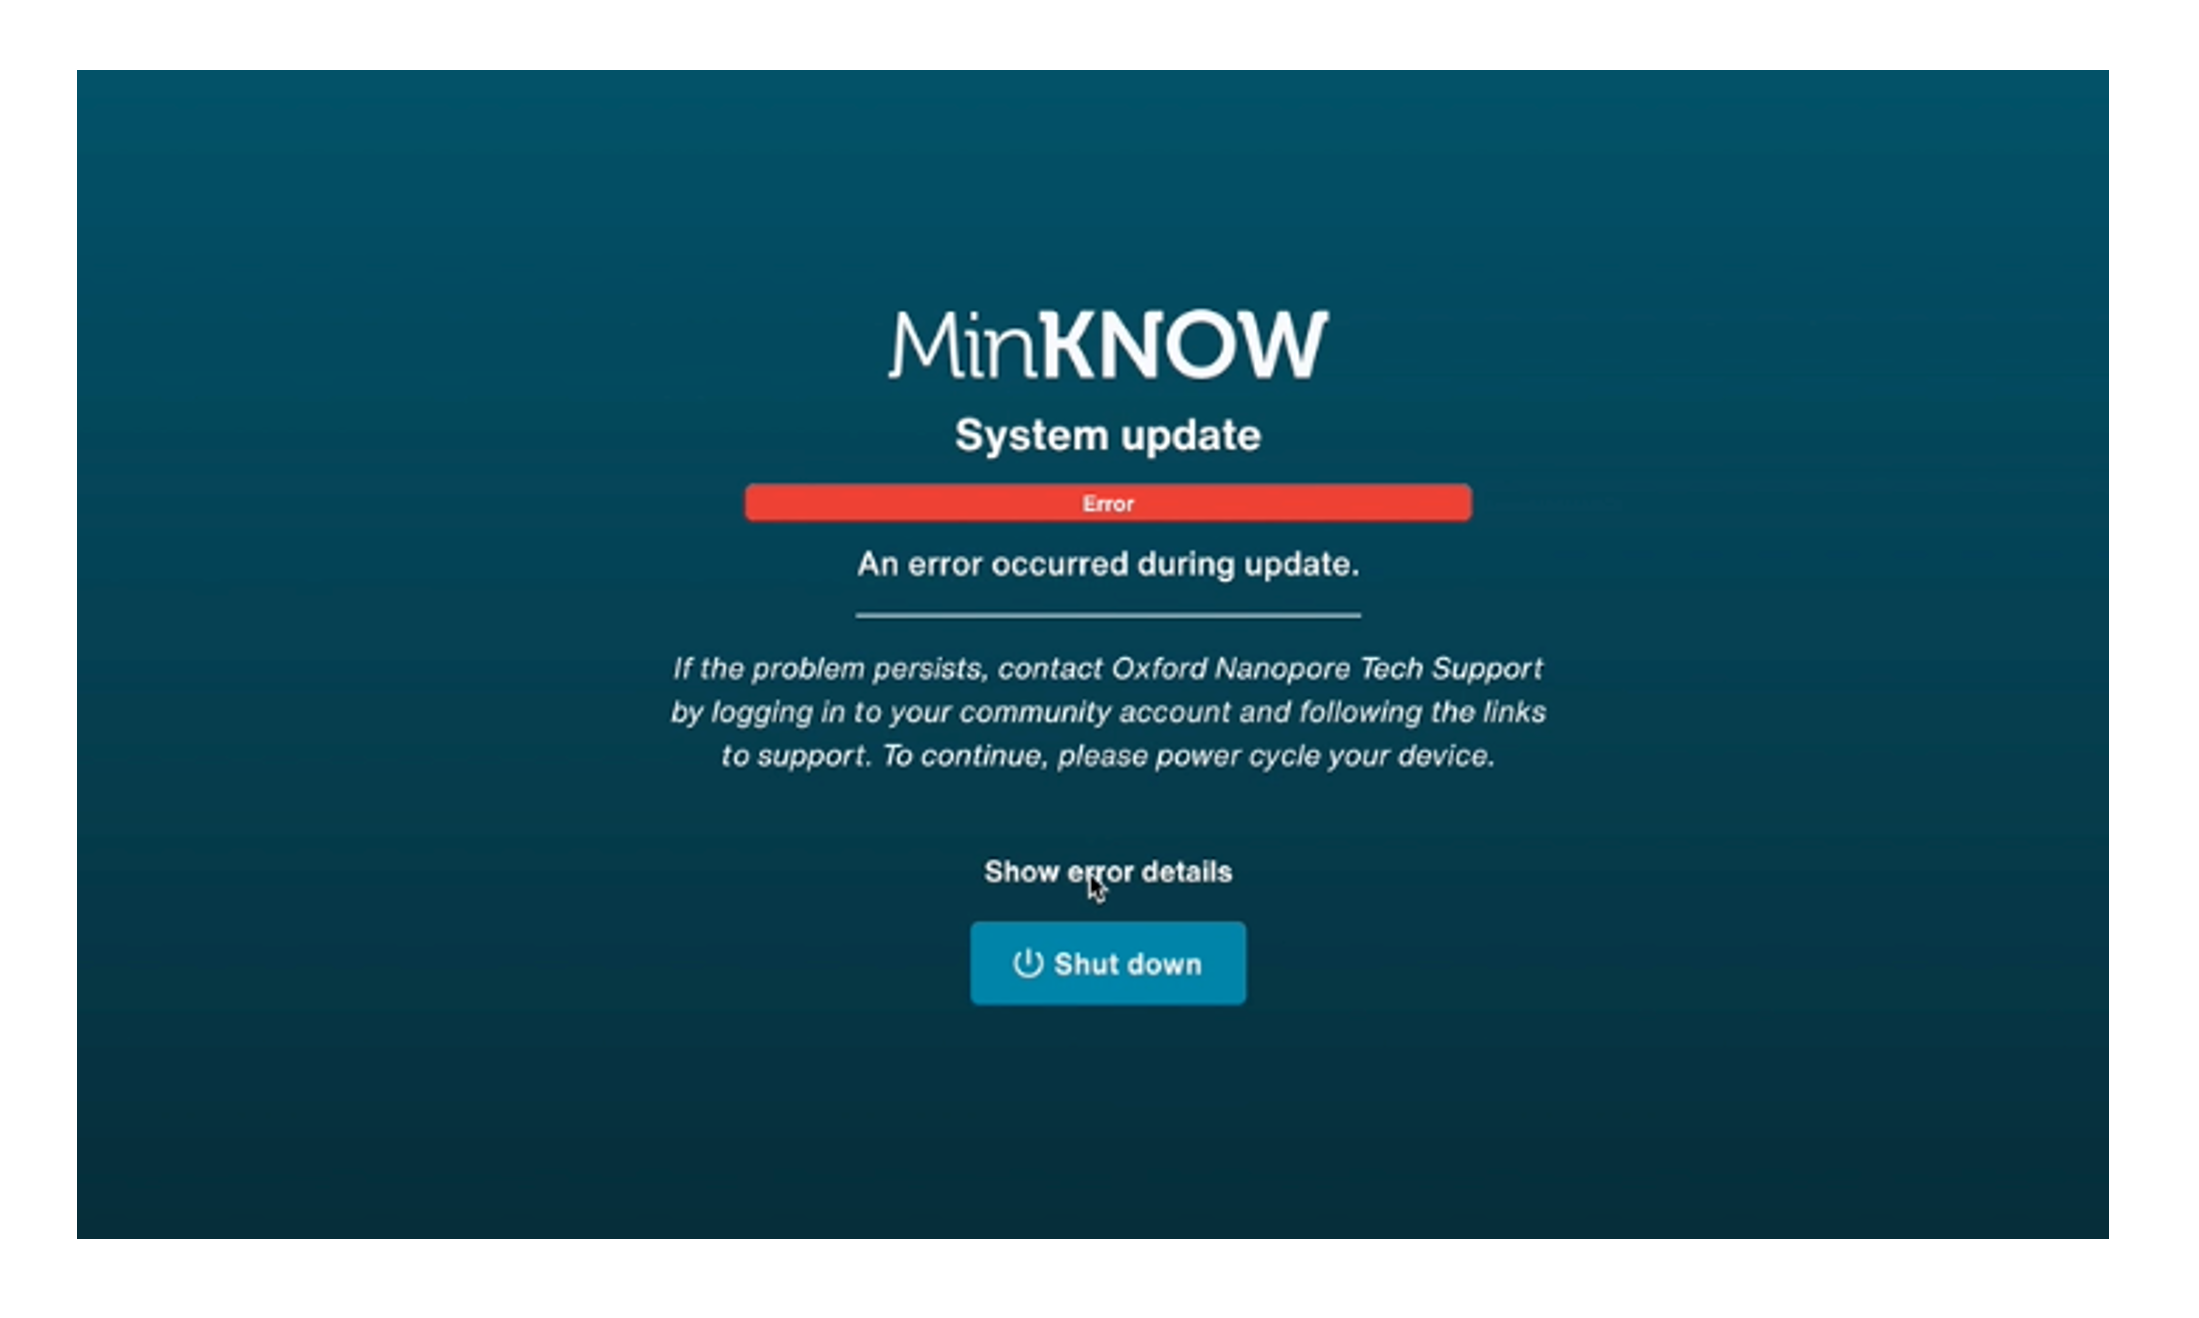 MinKNOW system update error